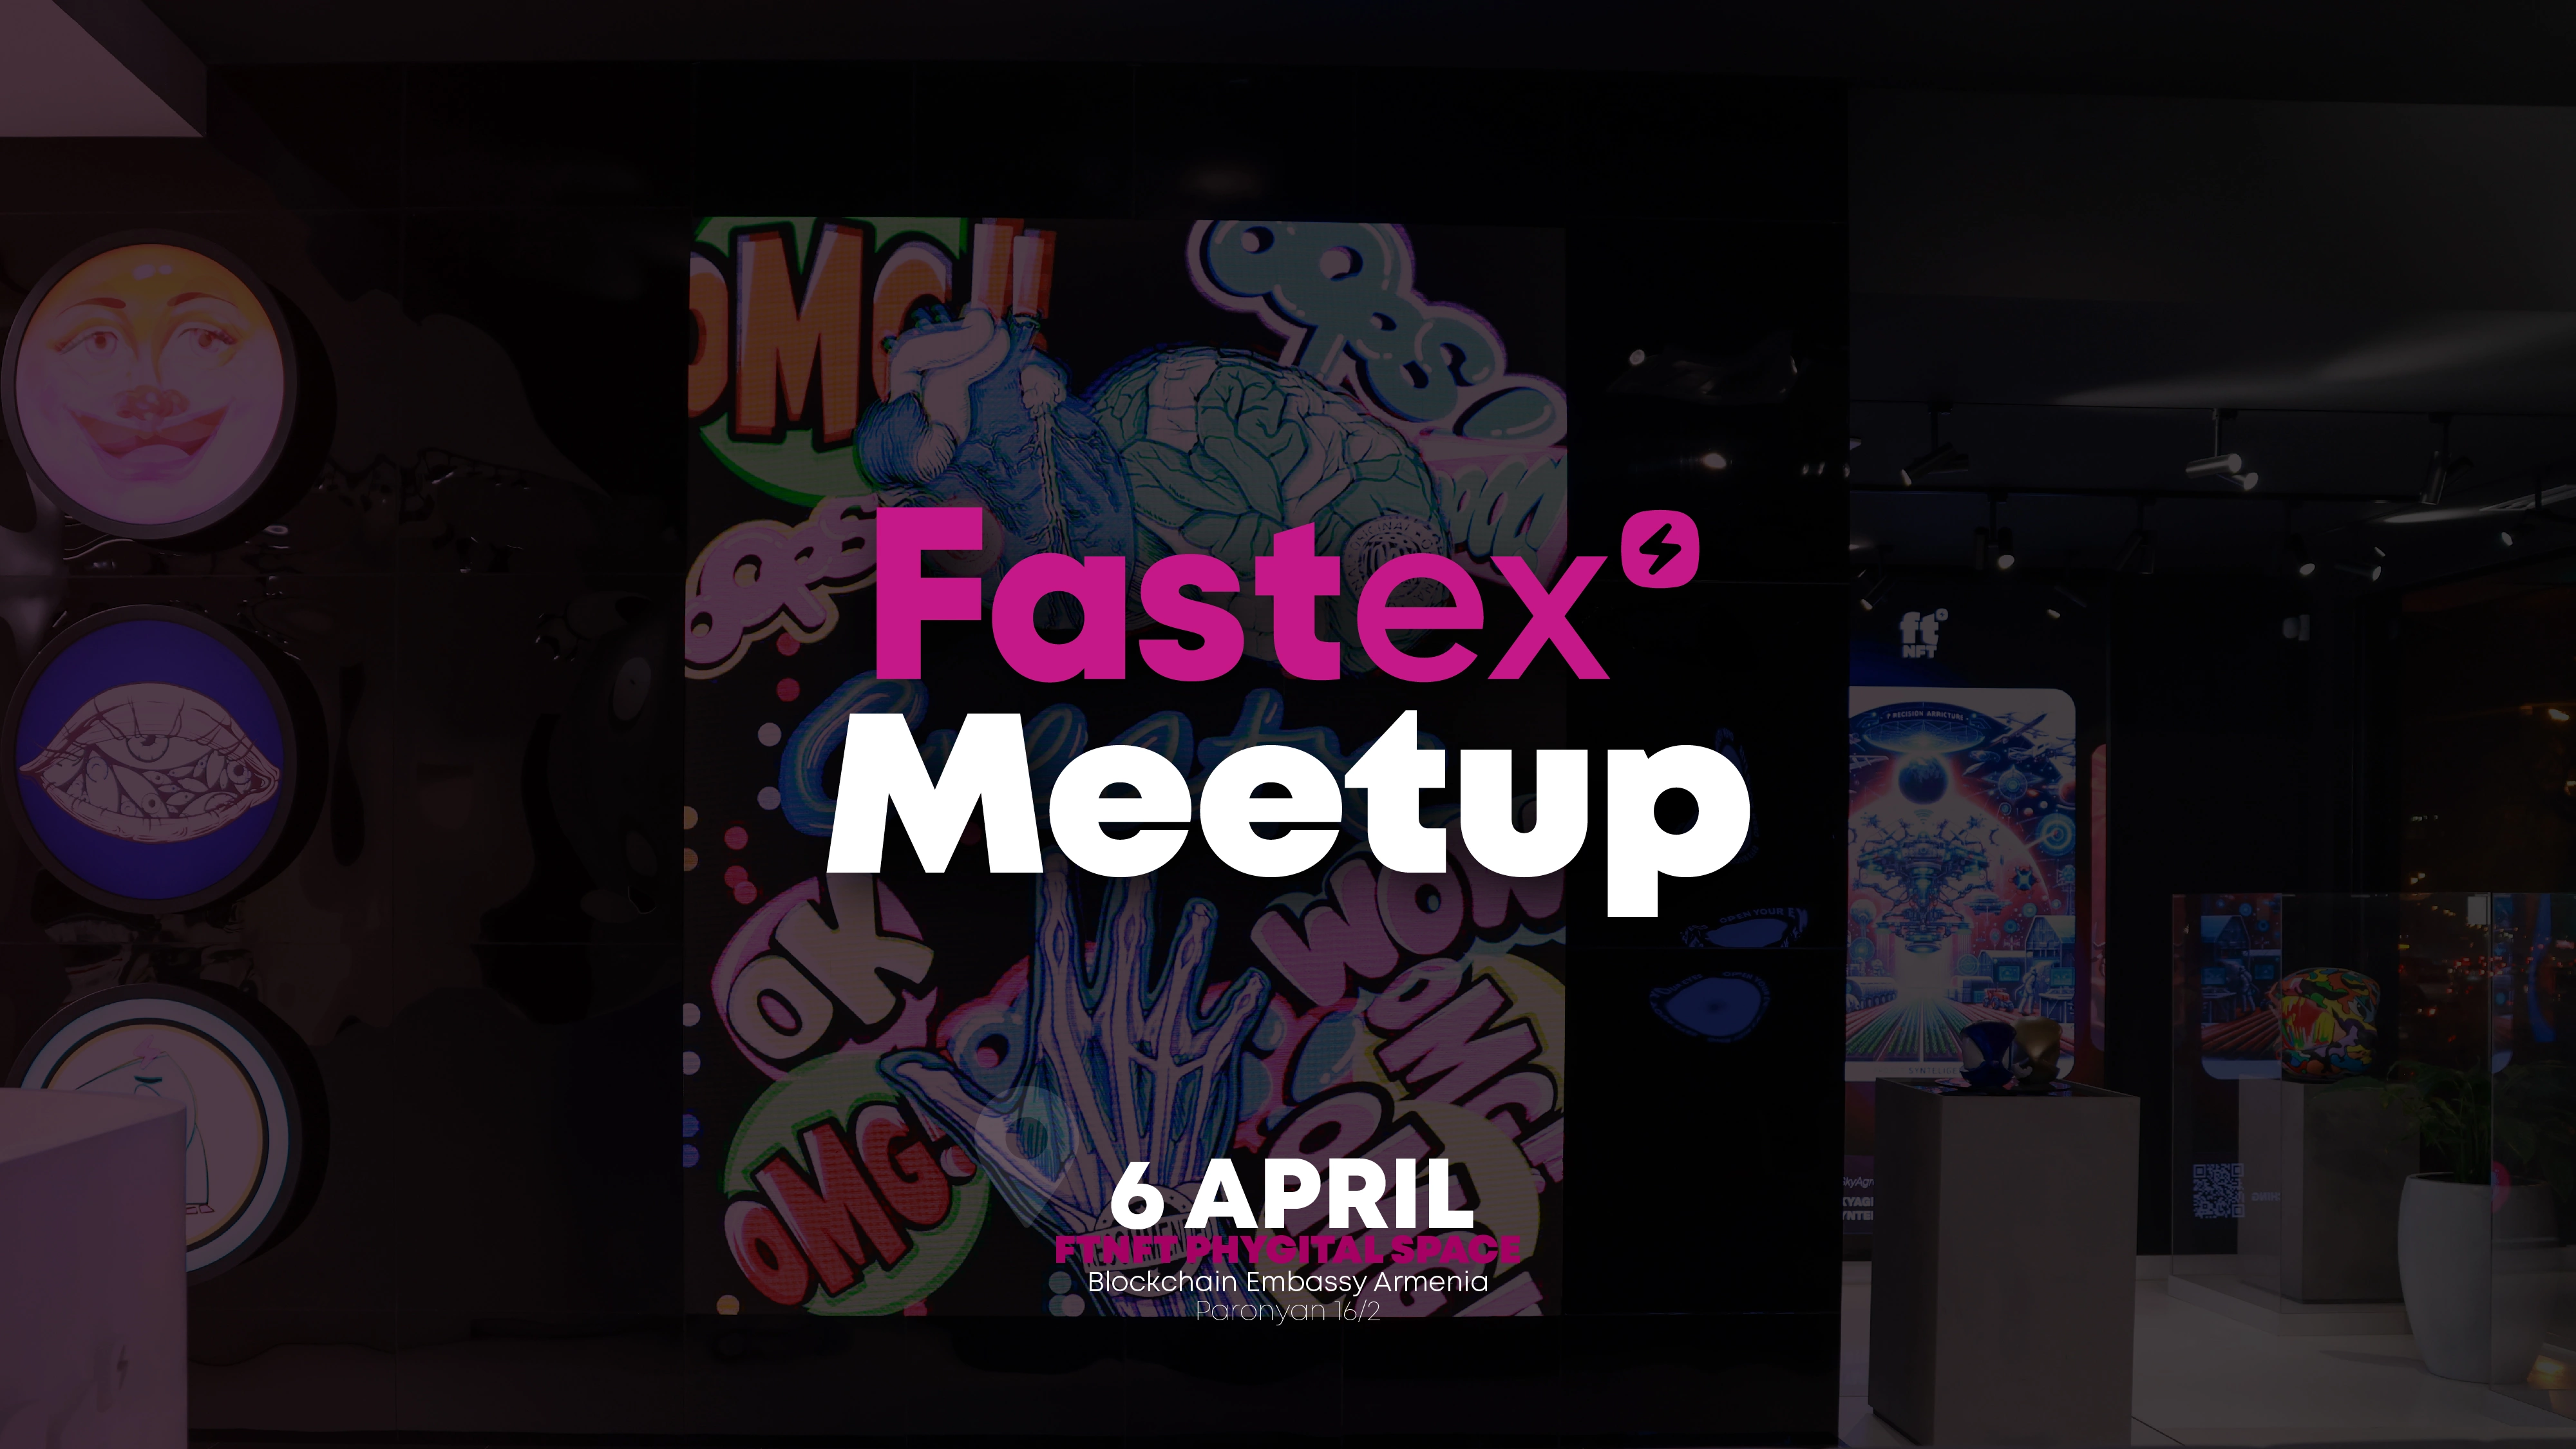 Fastex Meetup Vol 4. Հայաստանի բլոկչեյն էմբասիում ներկայացնում են ժամանակակից արվեստն ու բիզնեսը